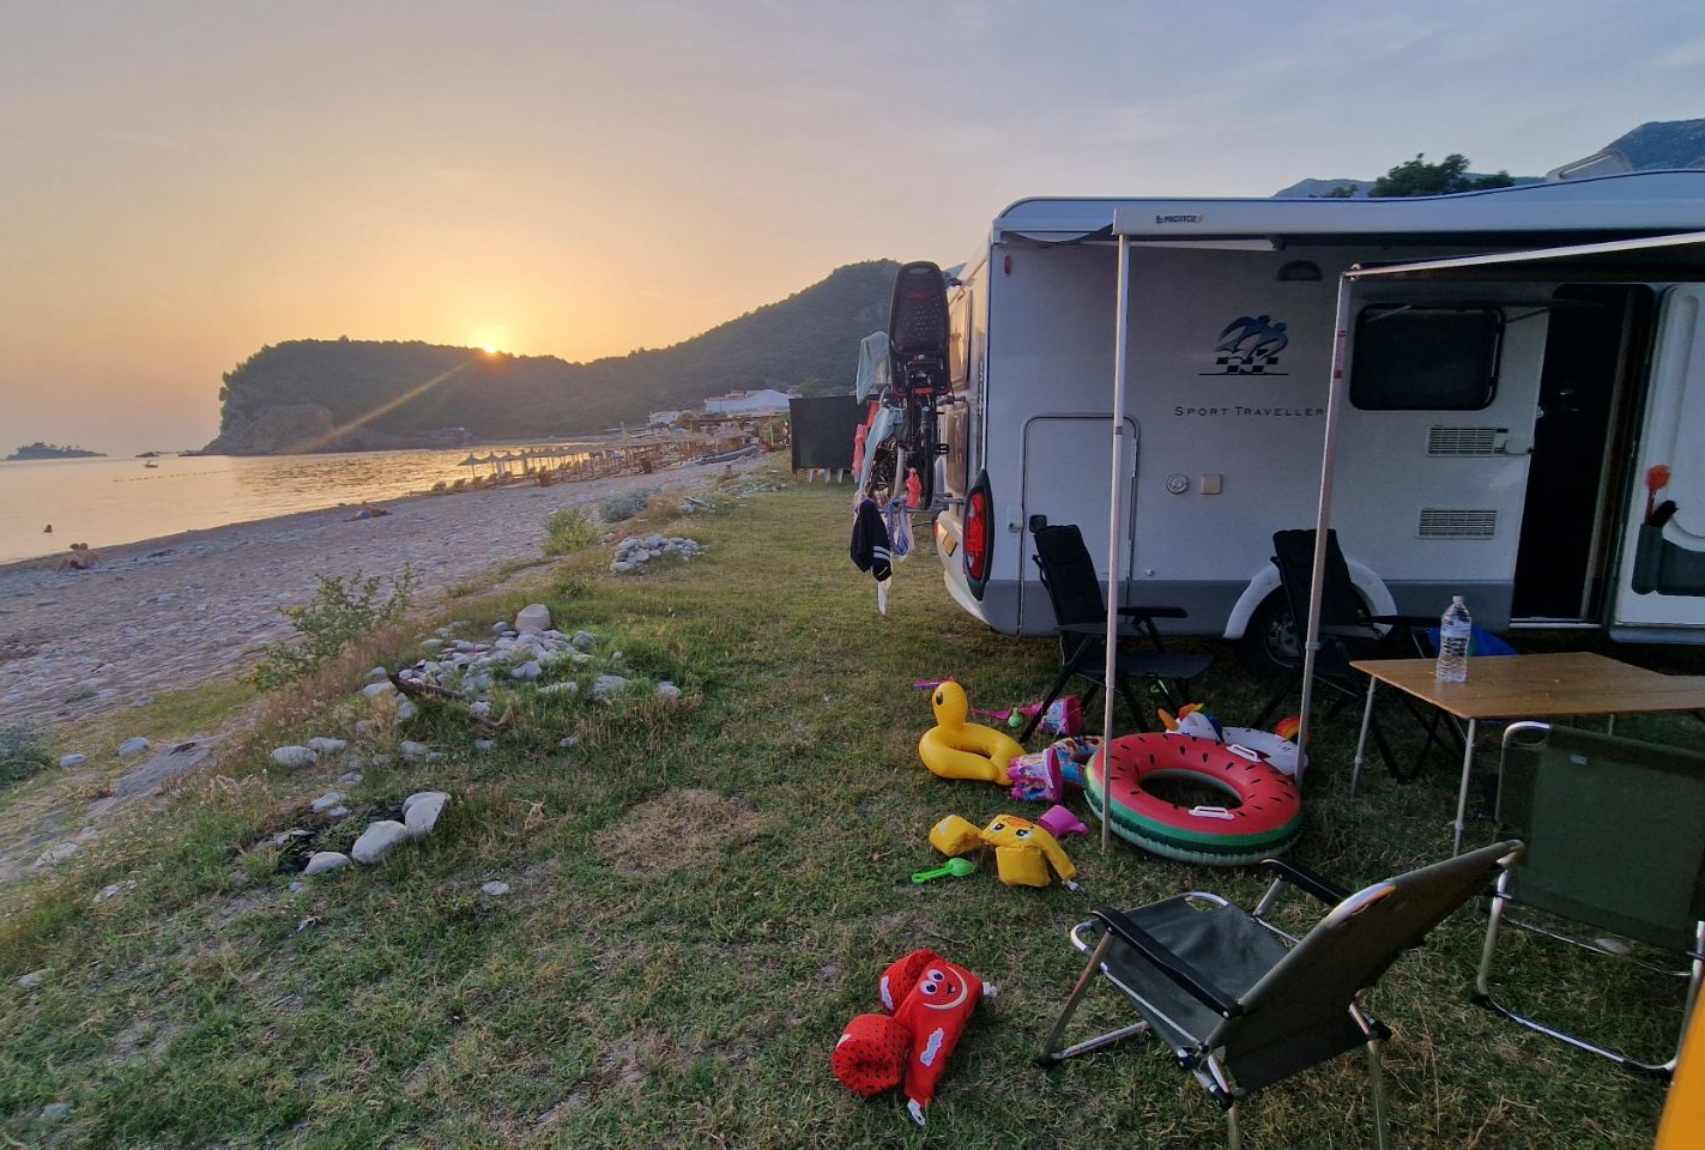 Familie Hommes_camperreis_Zuid-Europa_camper aan het strand_ondergaande zon